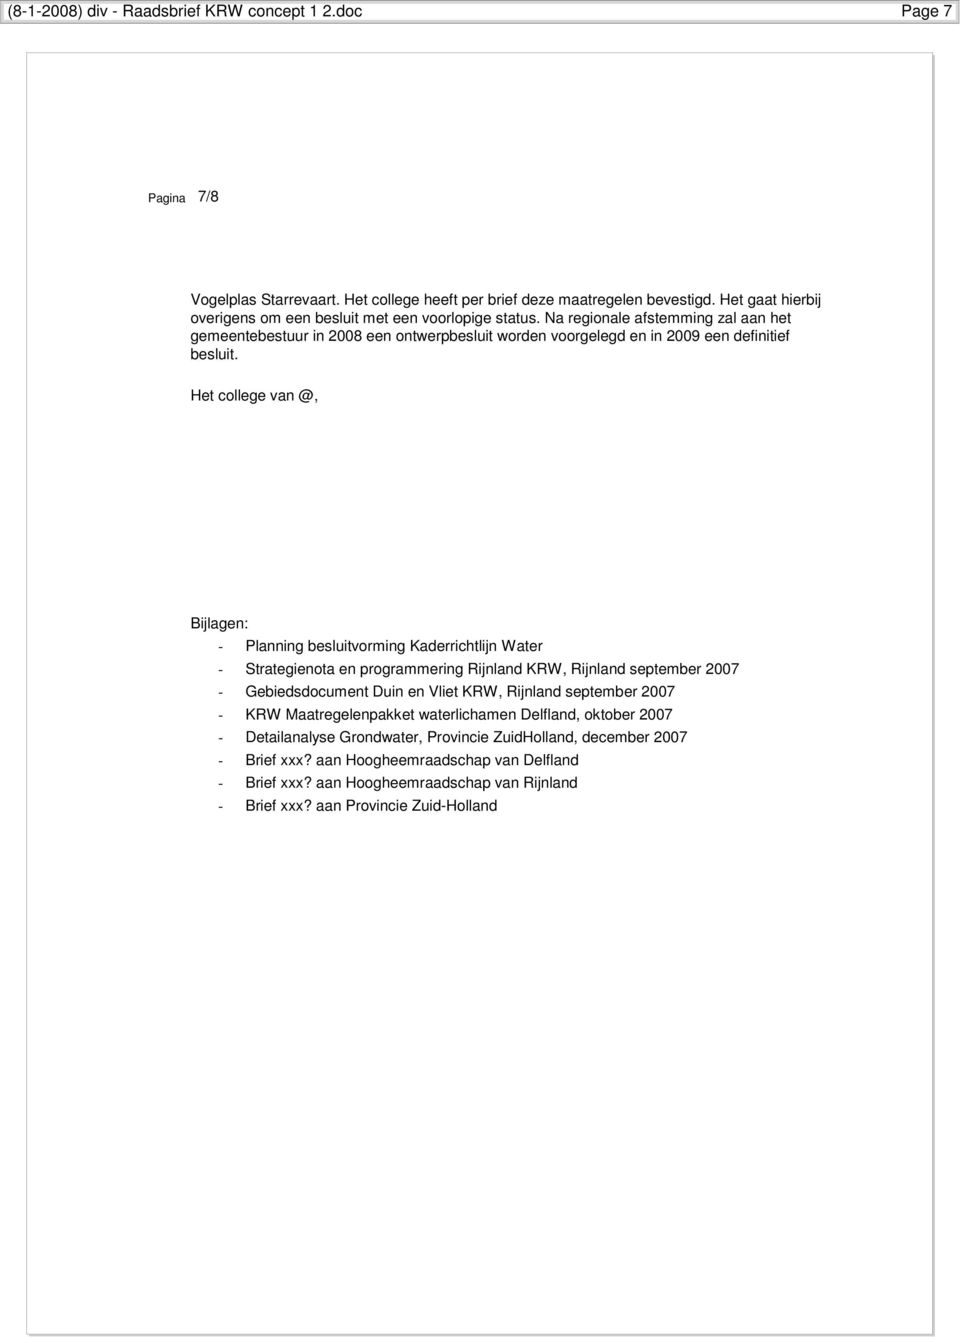 Het college van @, Bijlagen: - Planning besluitvorming Kaderrichtlijn Water - Strategienota en programmering Rijnland KRW, Rijnland september 2007 - Gebiedsdocument Duin en Vliet KRW, Rijnland